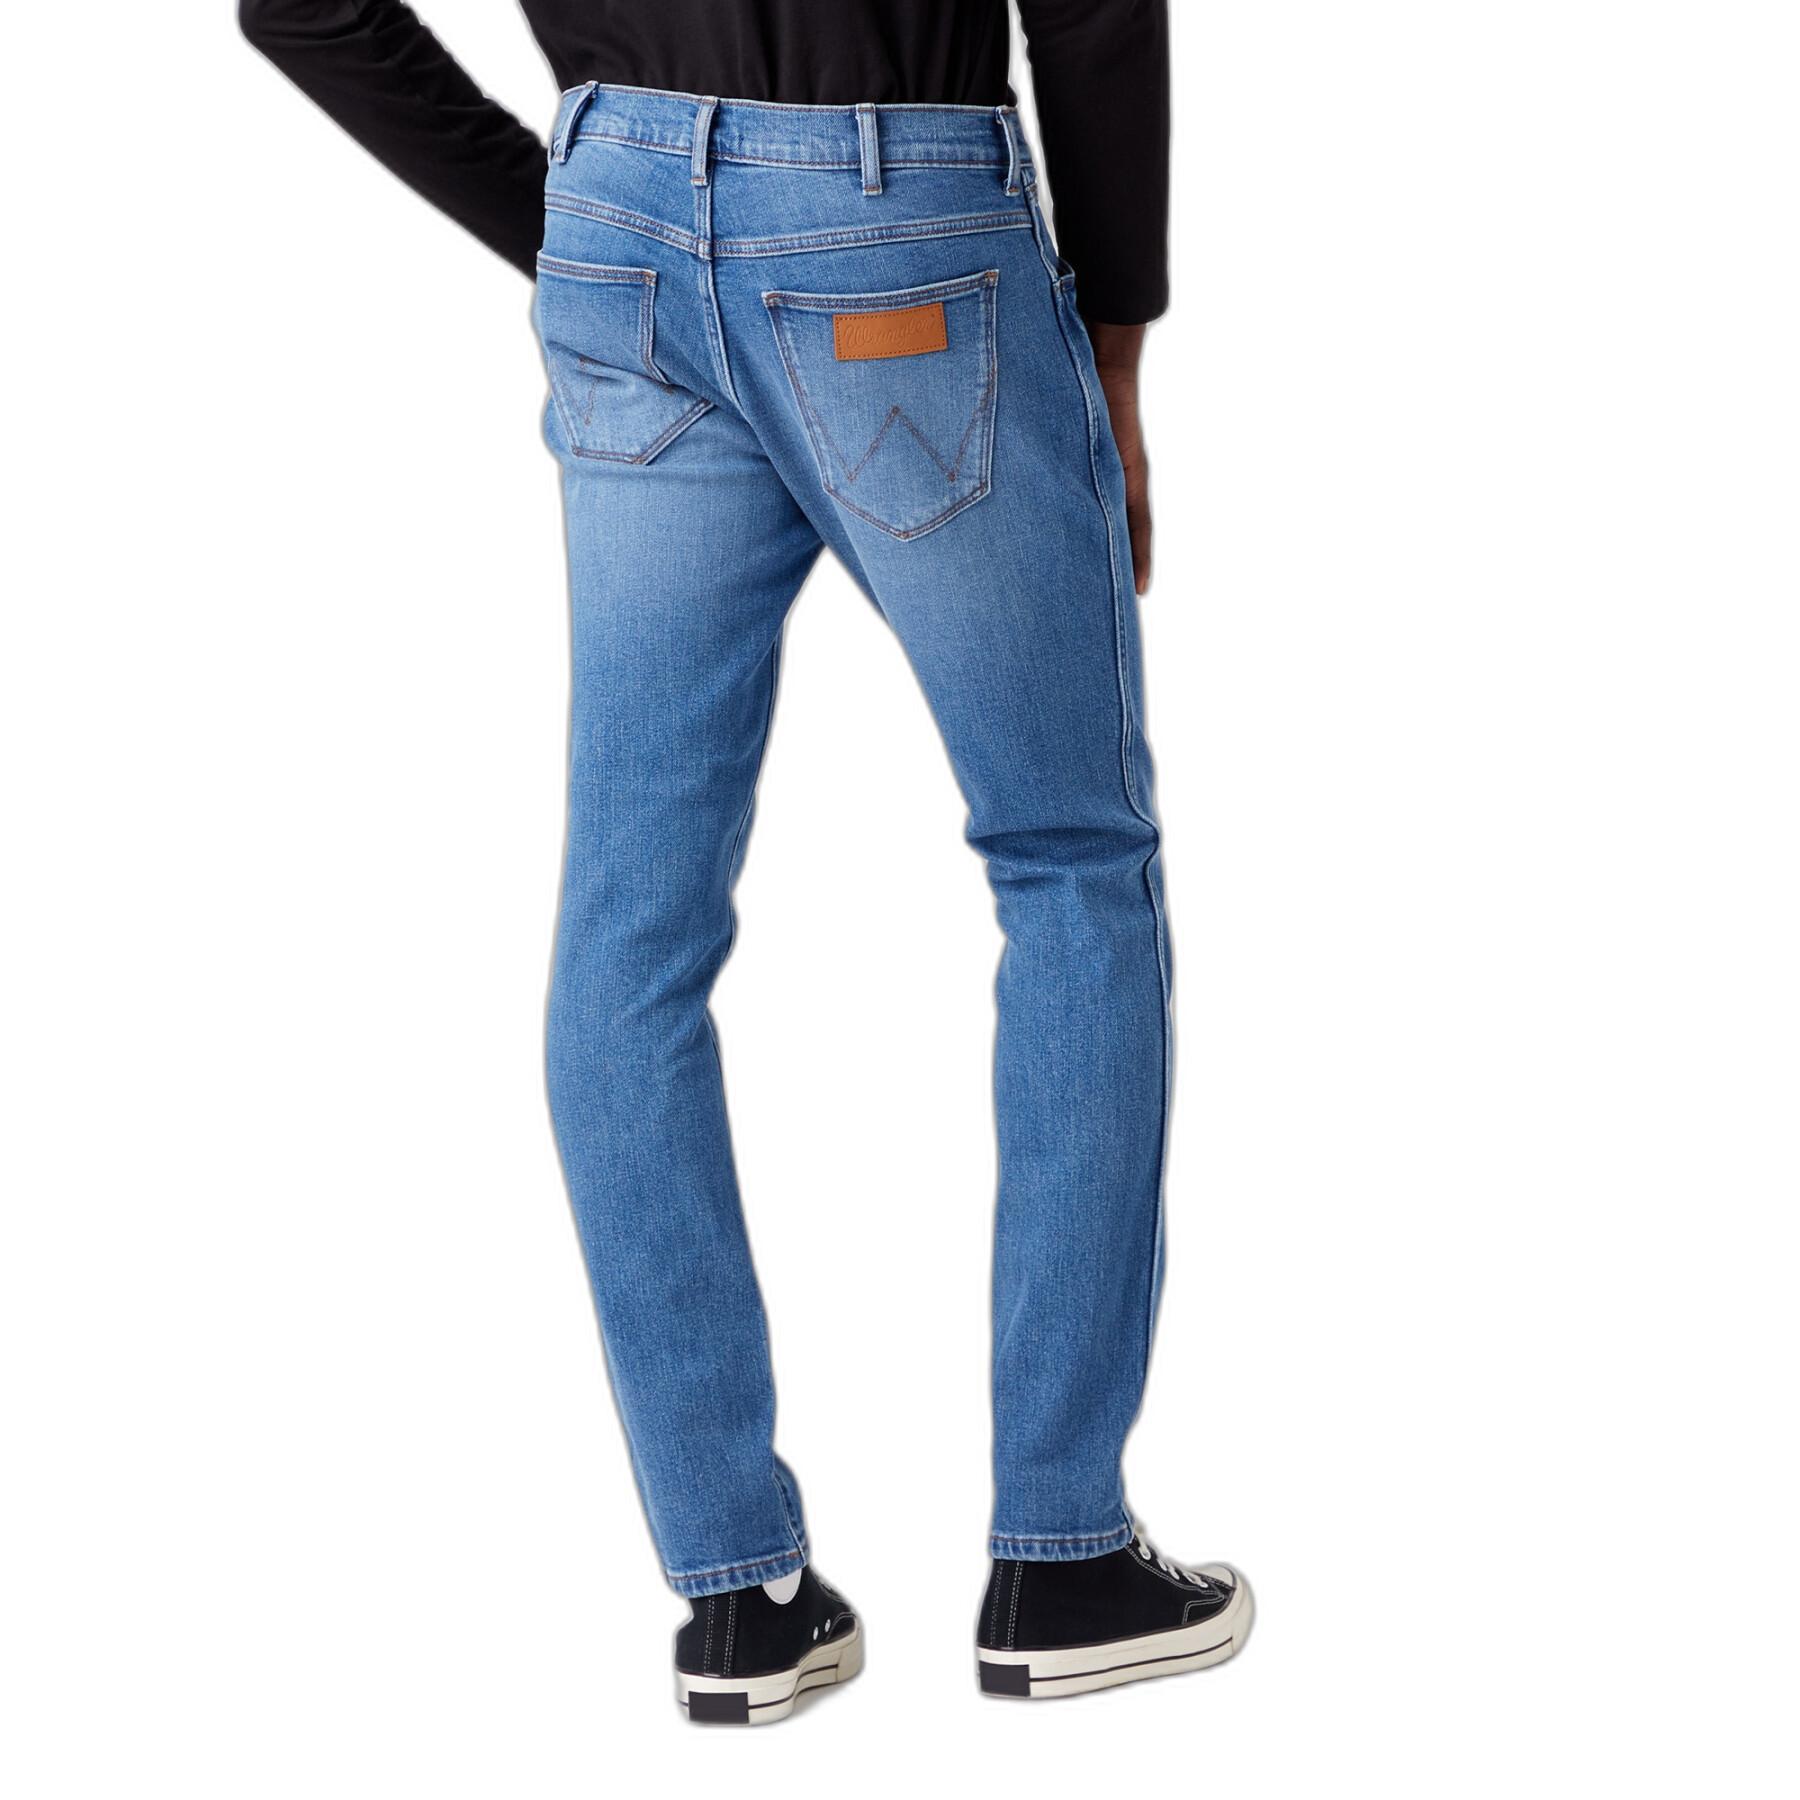 New jeans Wrangler Larston Favorite